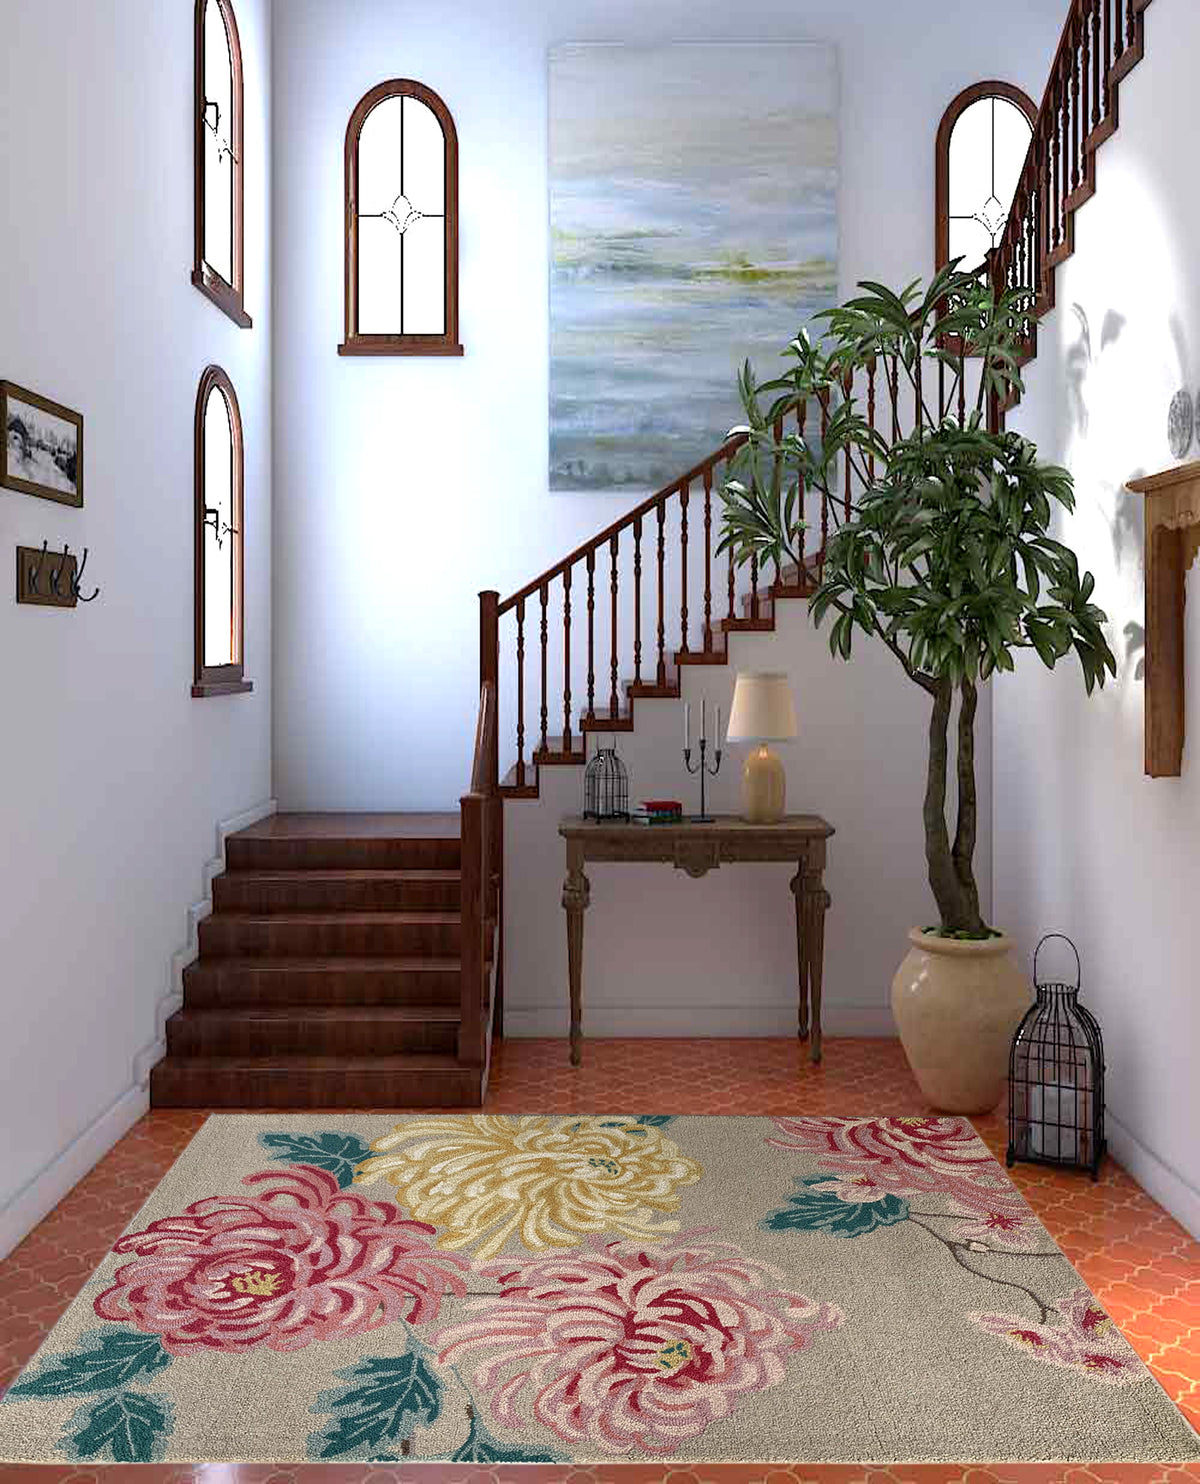 Rugslane Beige & Pink Color Floral Design 100% New Zealand Wool Handmade Carpet 5.3ftX 7.7ft